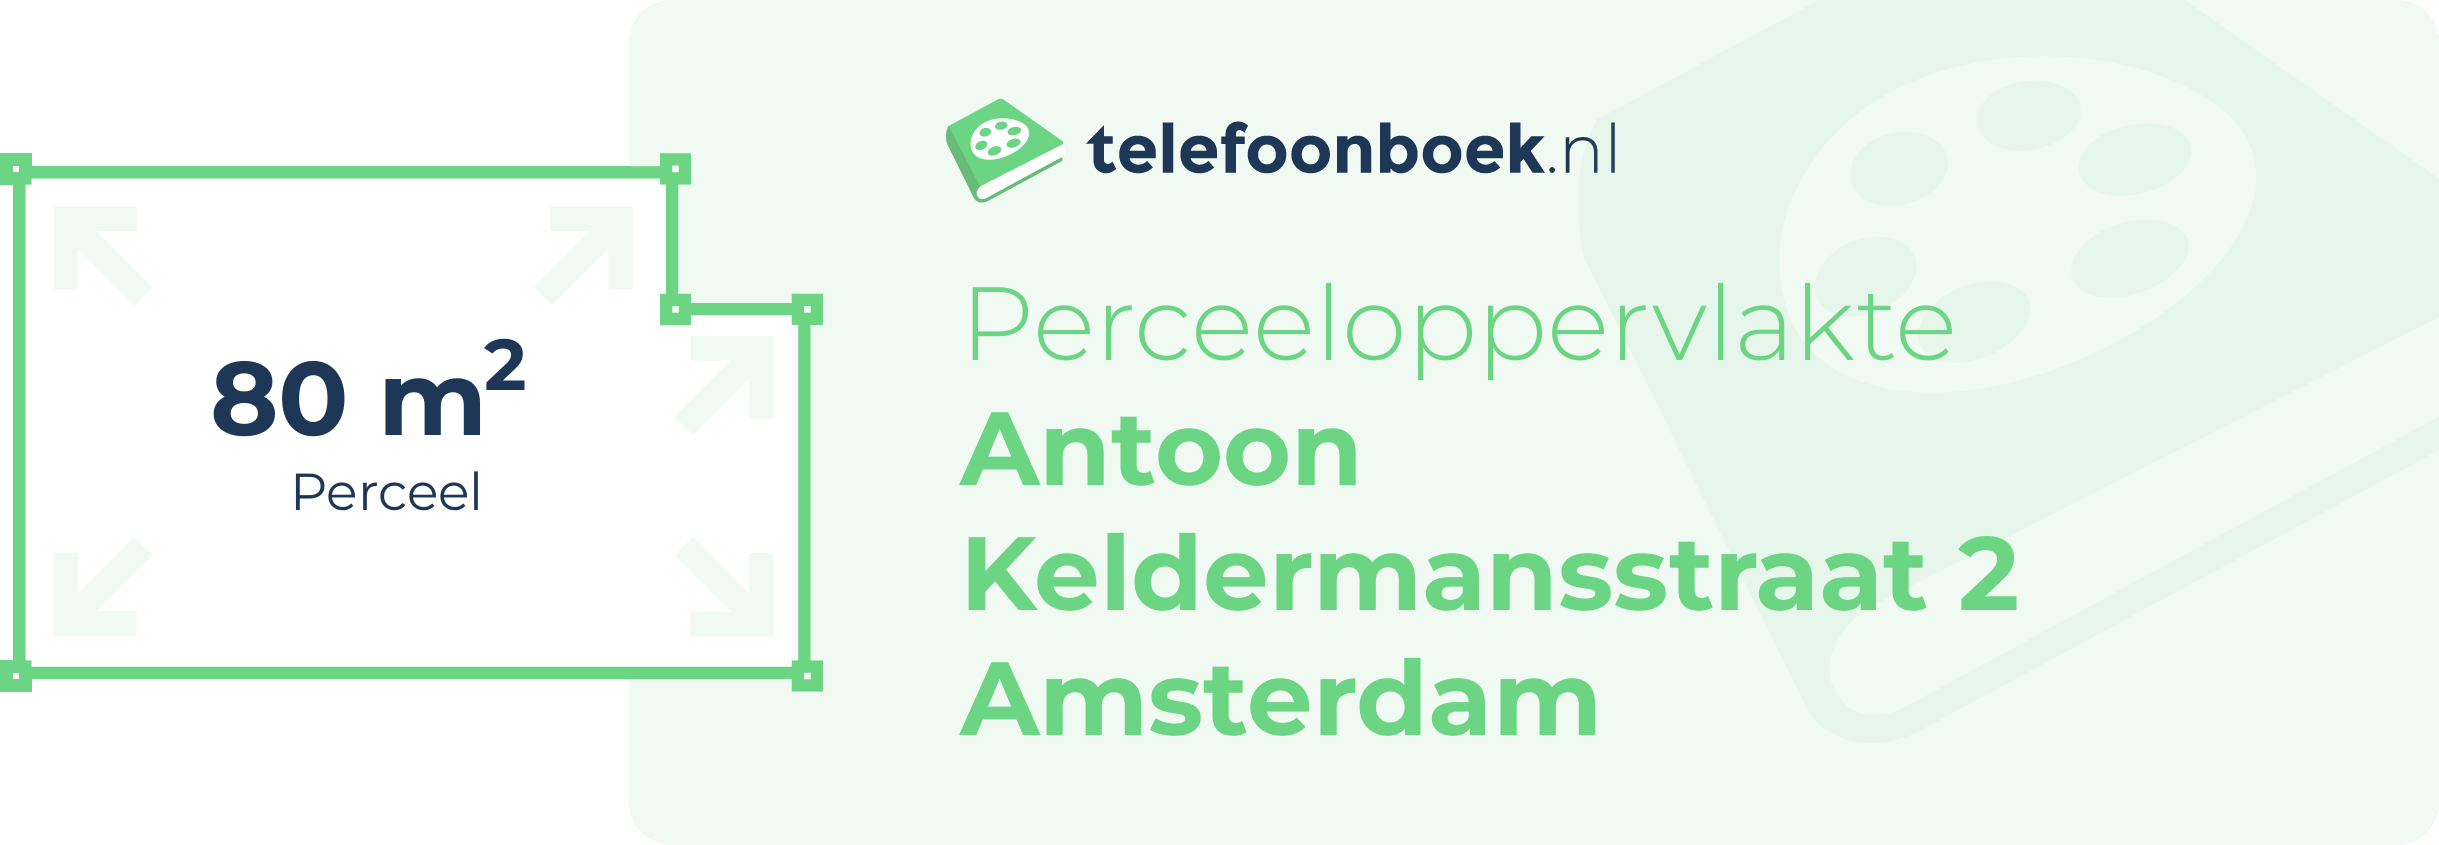 Perceeloppervlakte Antoon Keldermansstraat 2 Amsterdam